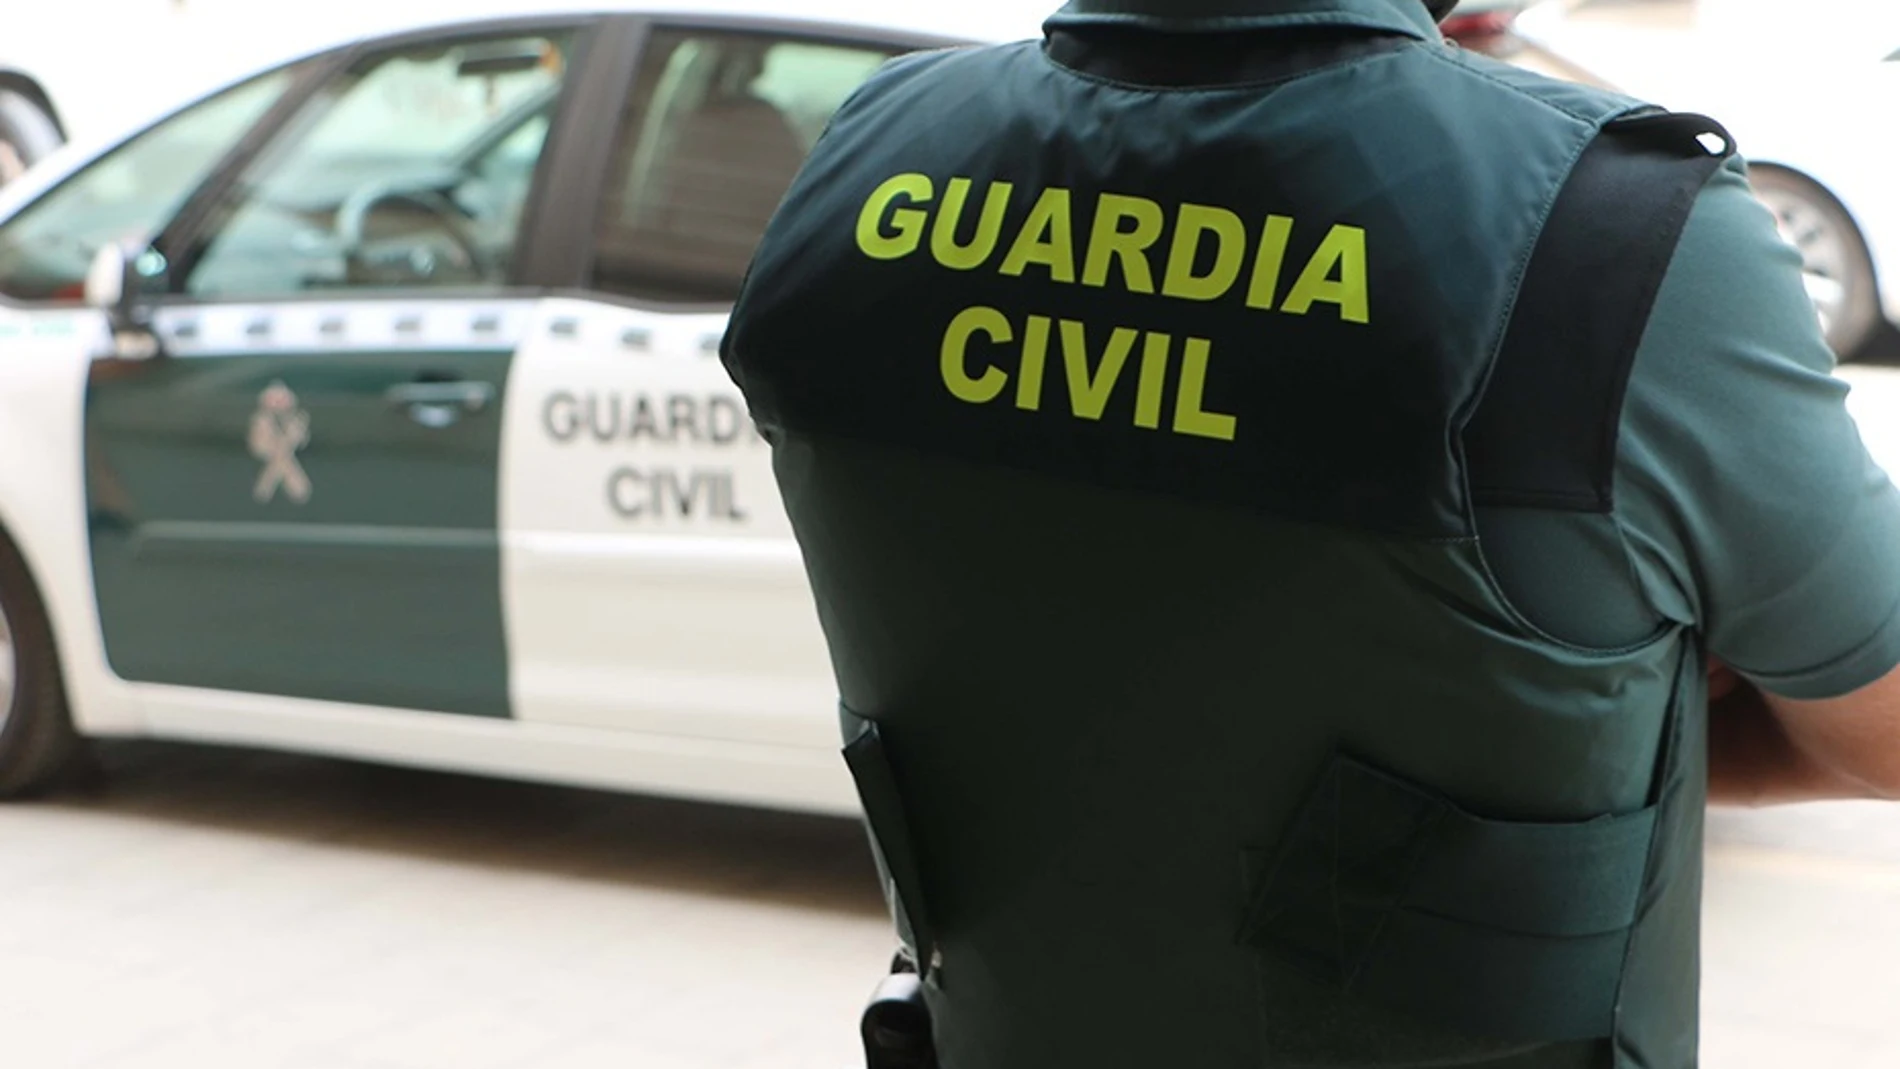 Asesinan con un arma de fuego a una mujer en Oia (Pontevedra)